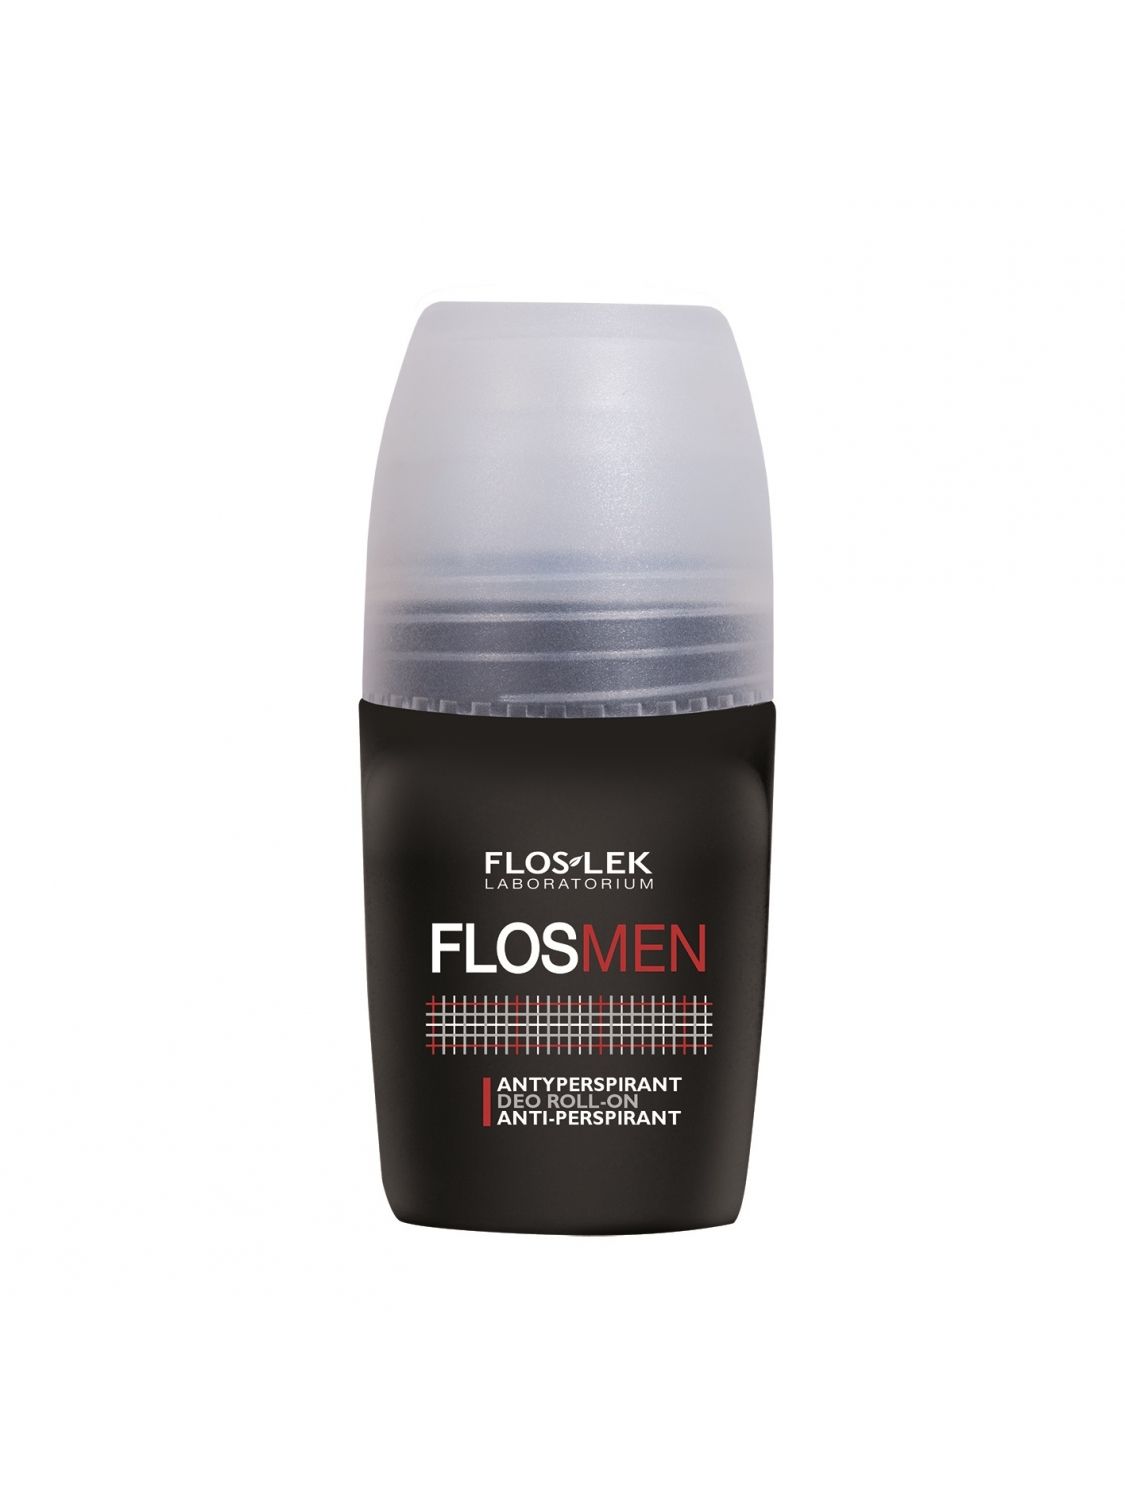 FLOSMEN® Antyperspirant deo roll-on -50 ml - Floslek